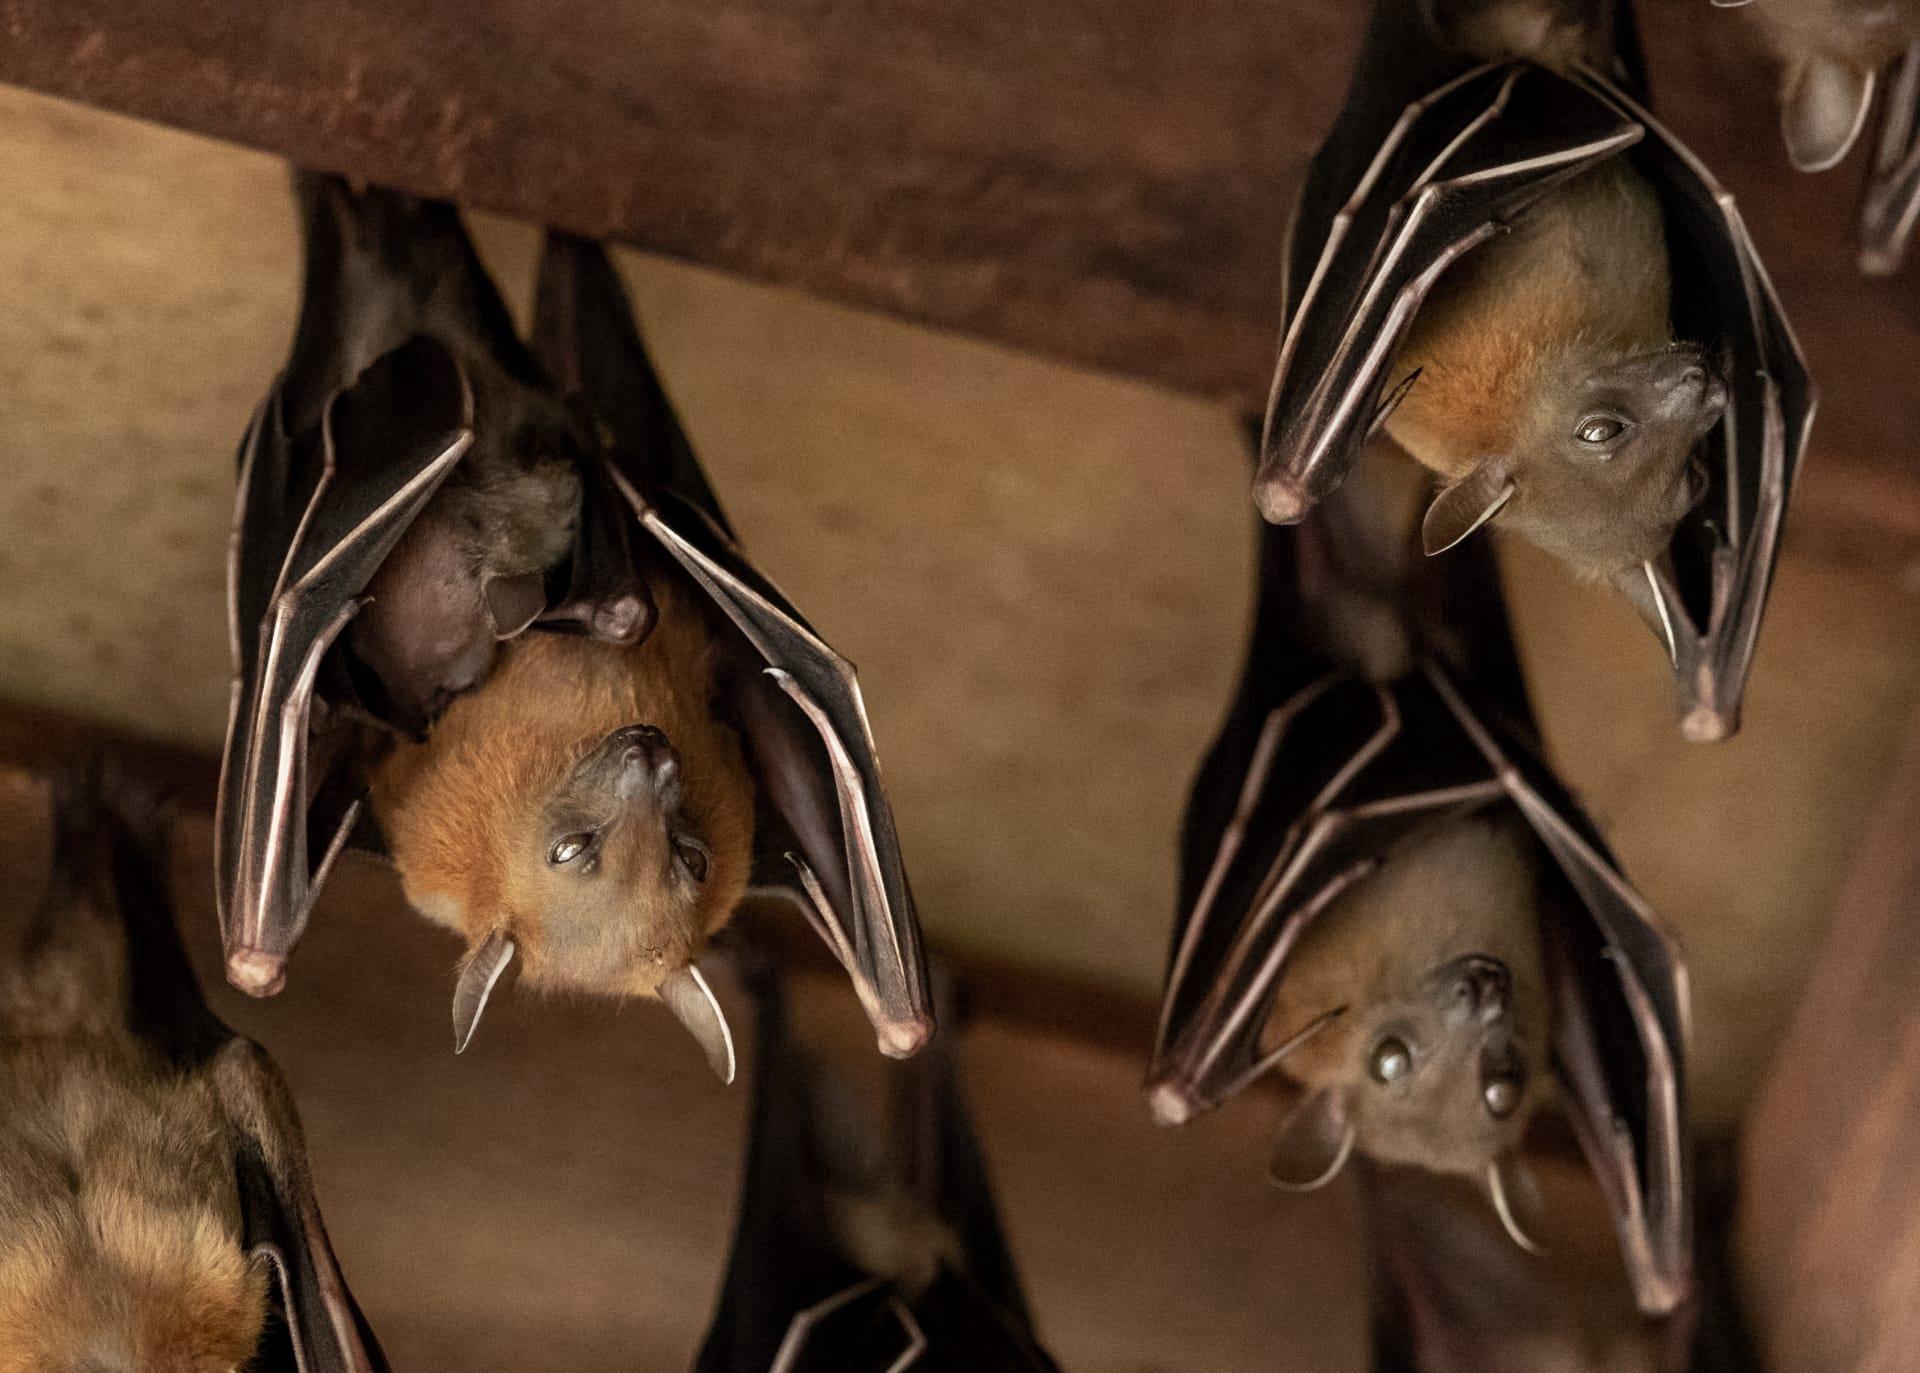 Bat pictures